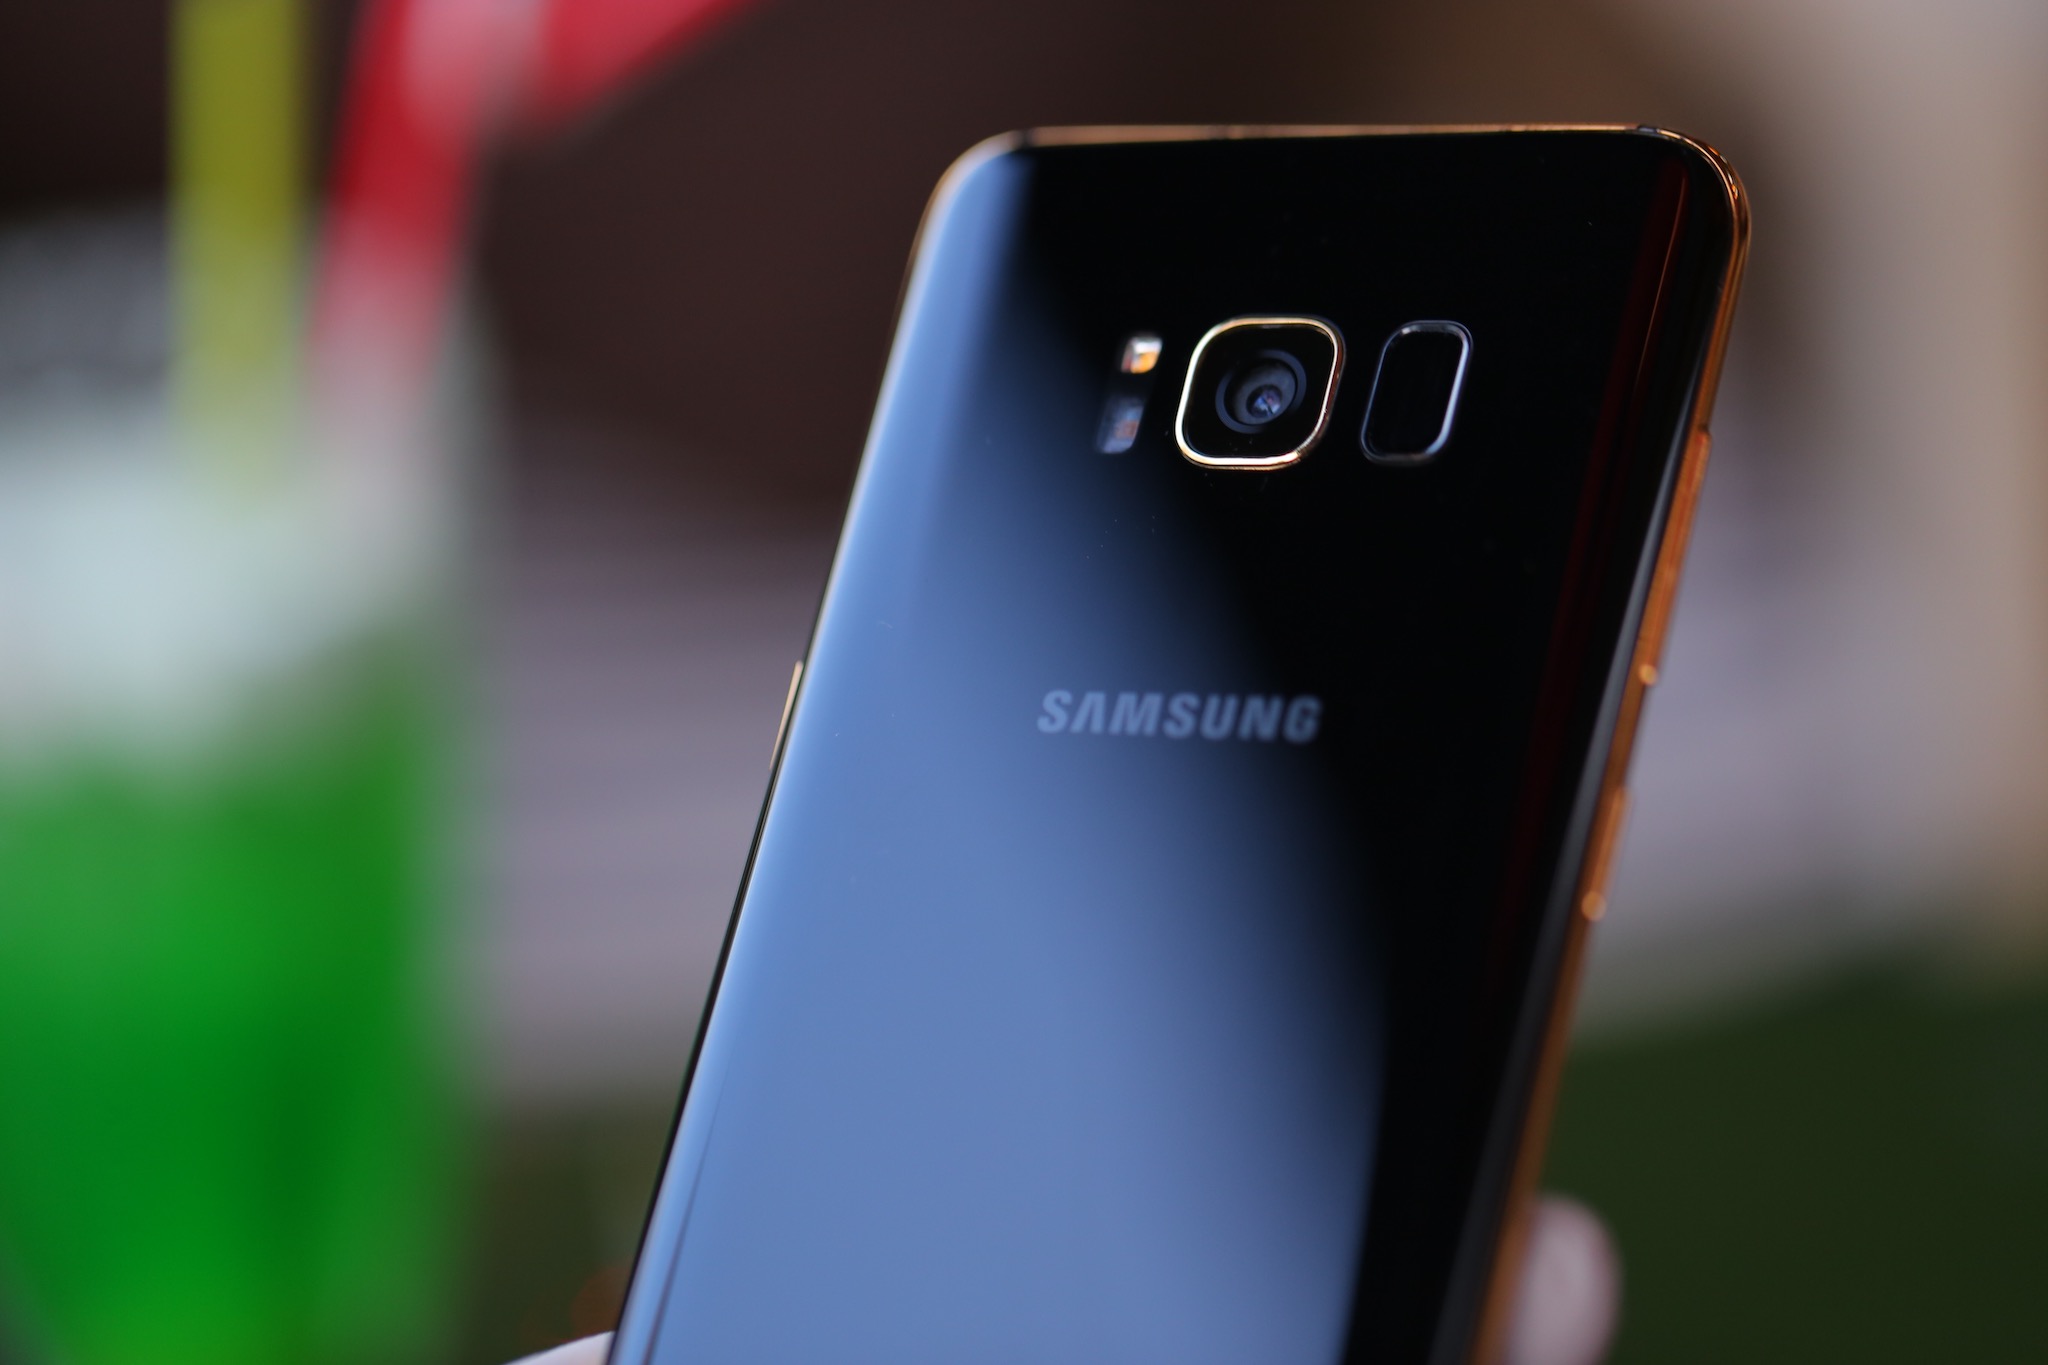 Chiêm ngưỡng Galaxy S8 mạ vàng 24K cực độc tại Việt Nam